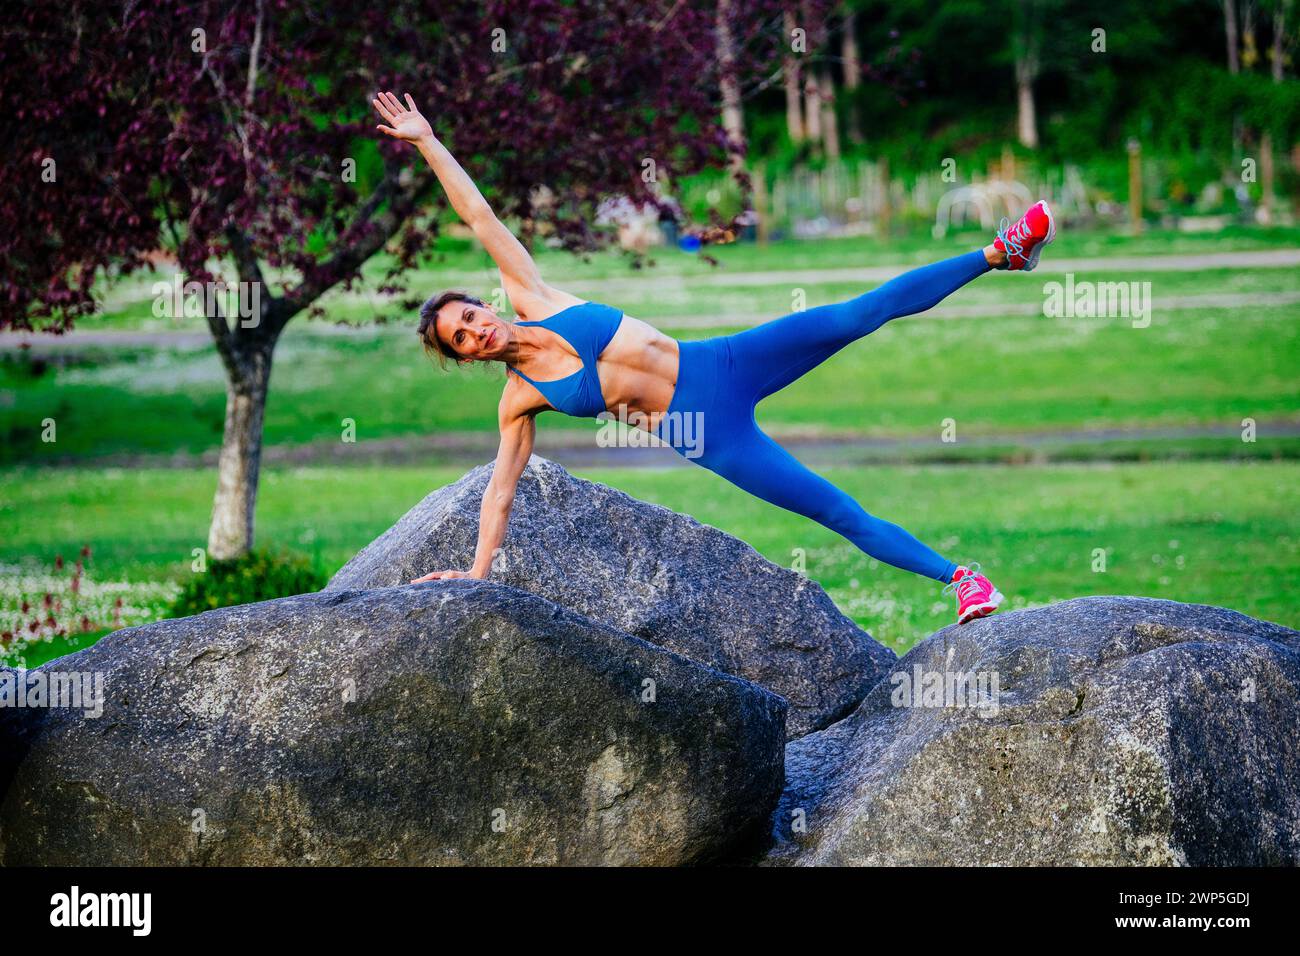 Weibliche Athletin trainiert in Sportbekleidung zwischen Kirschbäumen Stockfoto